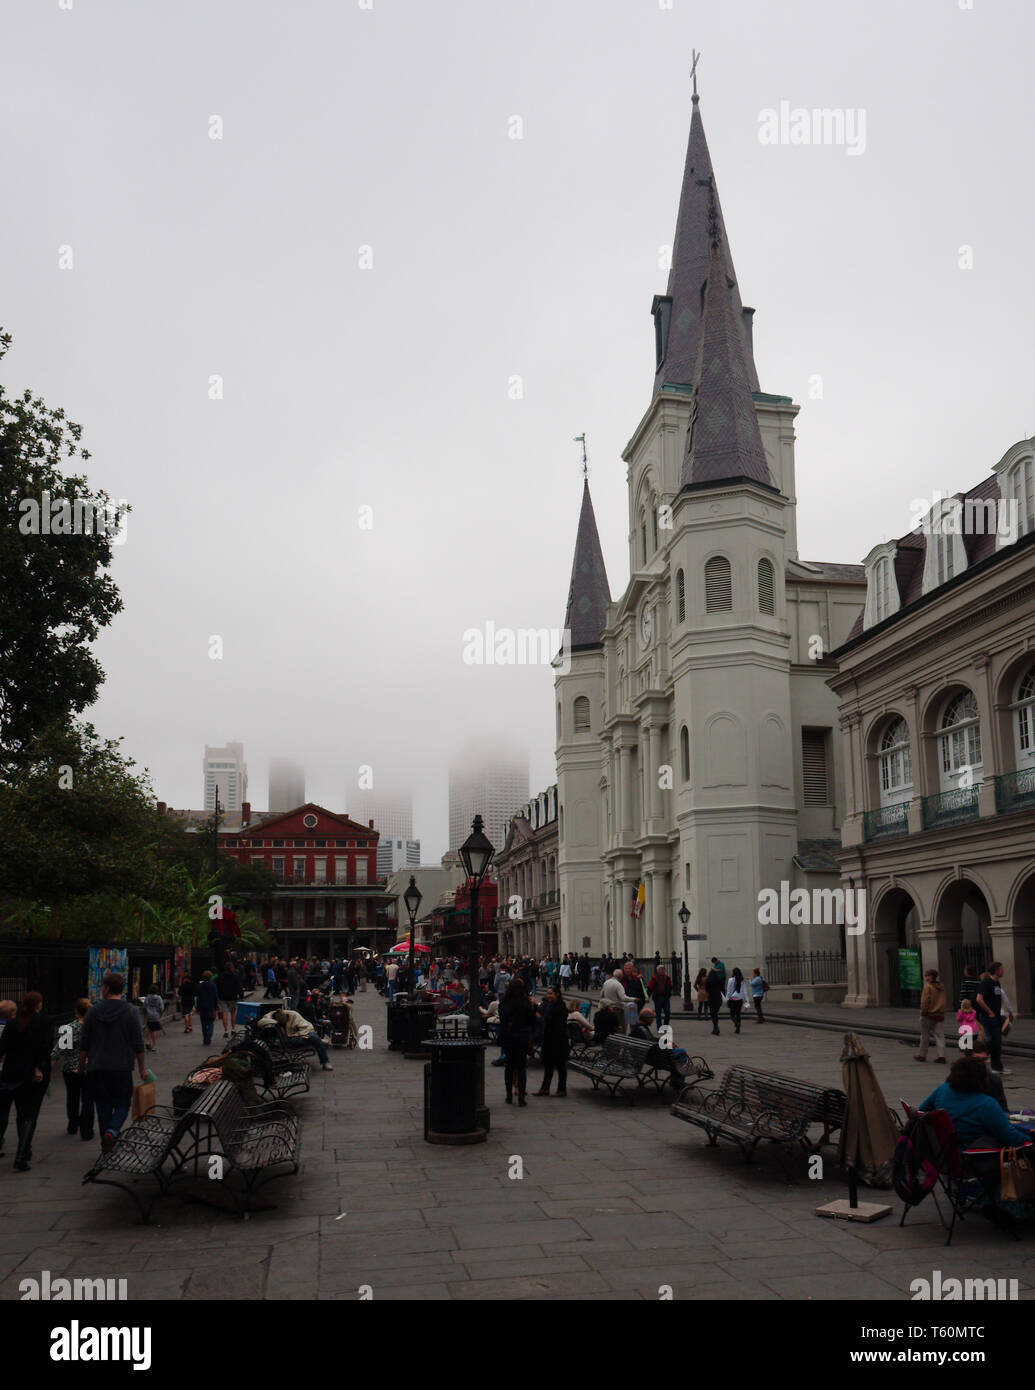 New Orleans, Louisiana, Stati Uniti d'America - 2019: Cattedrale di San Louis su un nebbioso giorno, situato nel Quartiere Francese quartiere, è il più antico negli Stati Uniti. Foto Stock